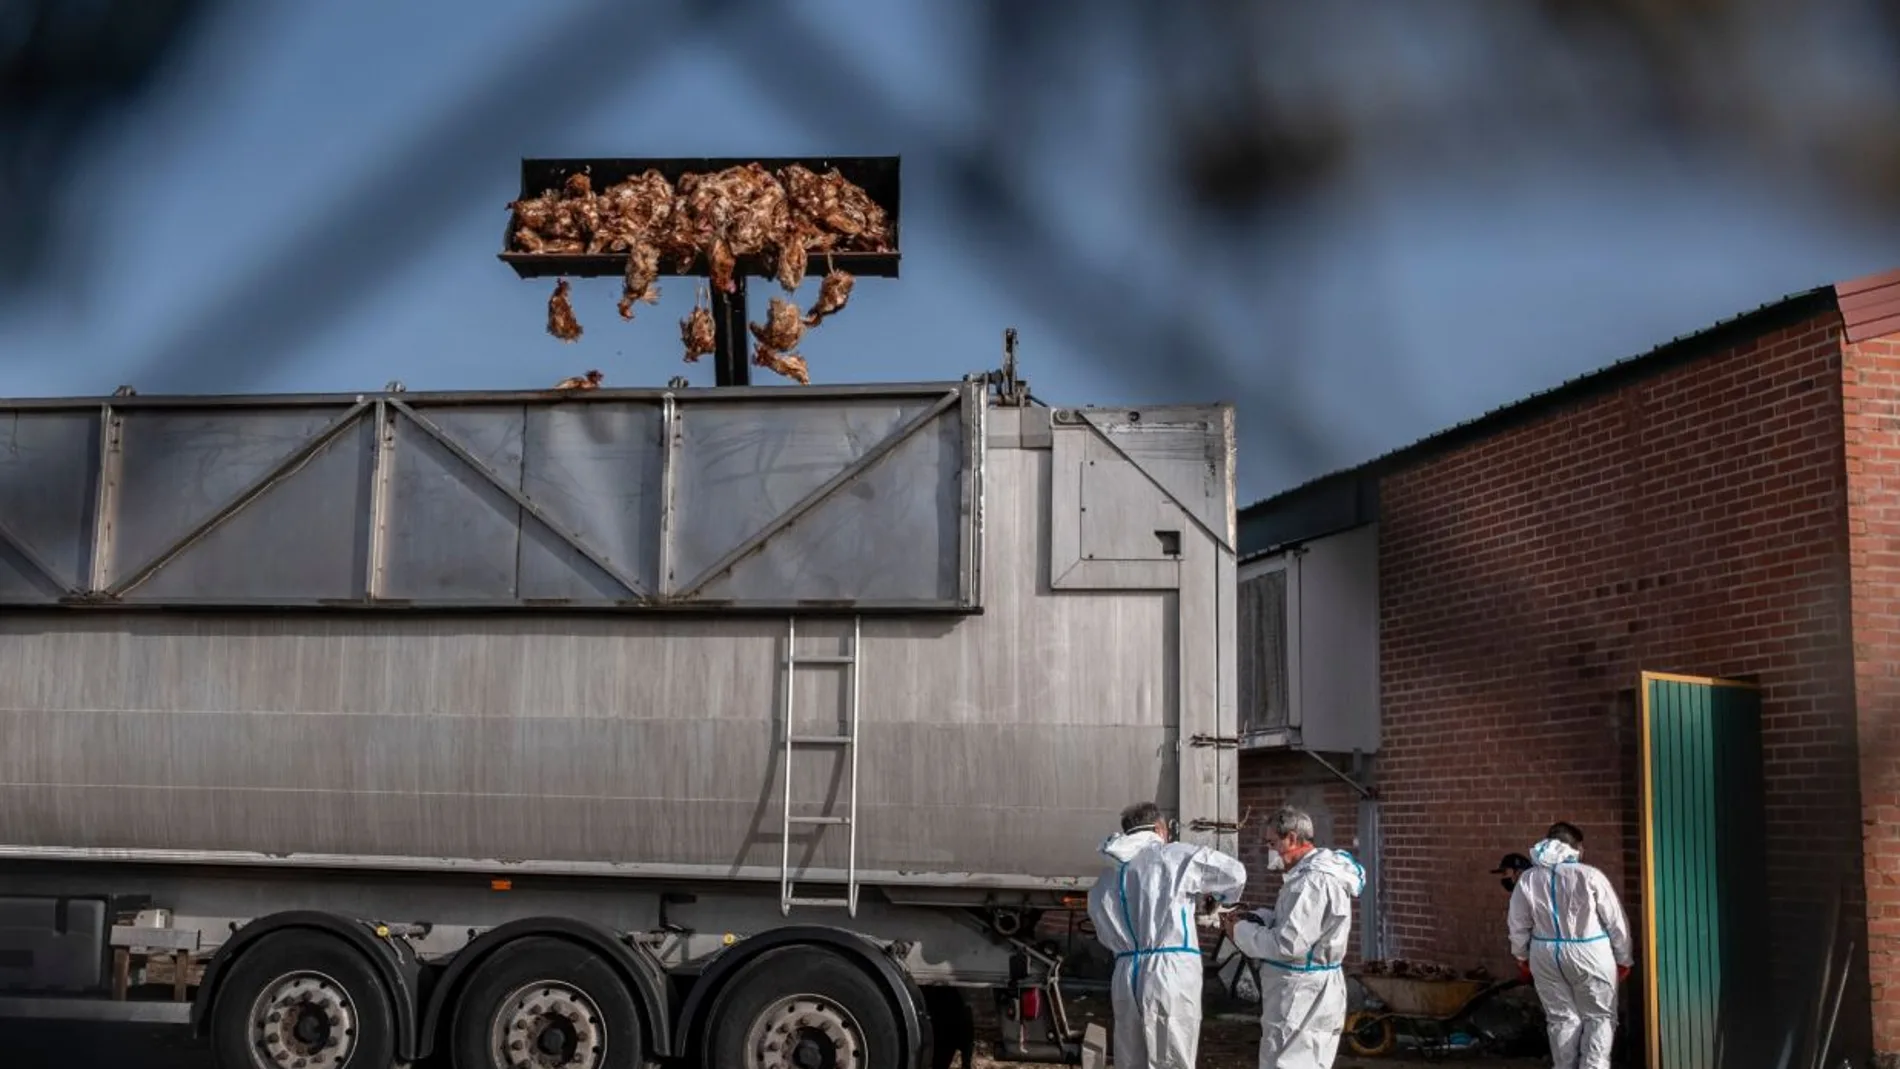 Miles de gallinas sacrificadas en Íscar, Valladolid